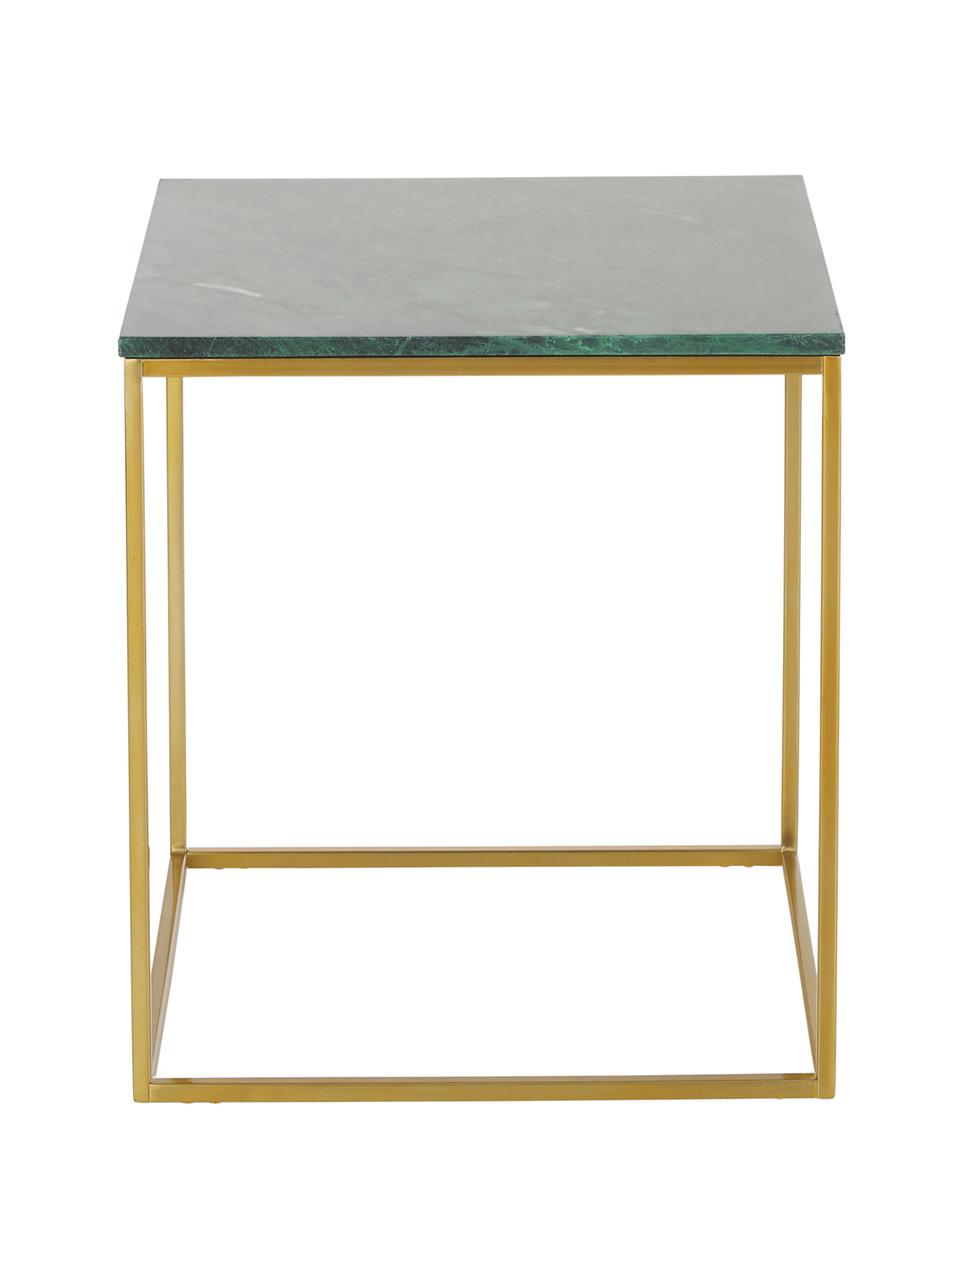 Stolik pomocniczy z marmuru Alys, Blat: marmur, Stelaż: metal malowany proszkowo, Zielony marmur, odcienie złotego, S 45 x W 50 cm